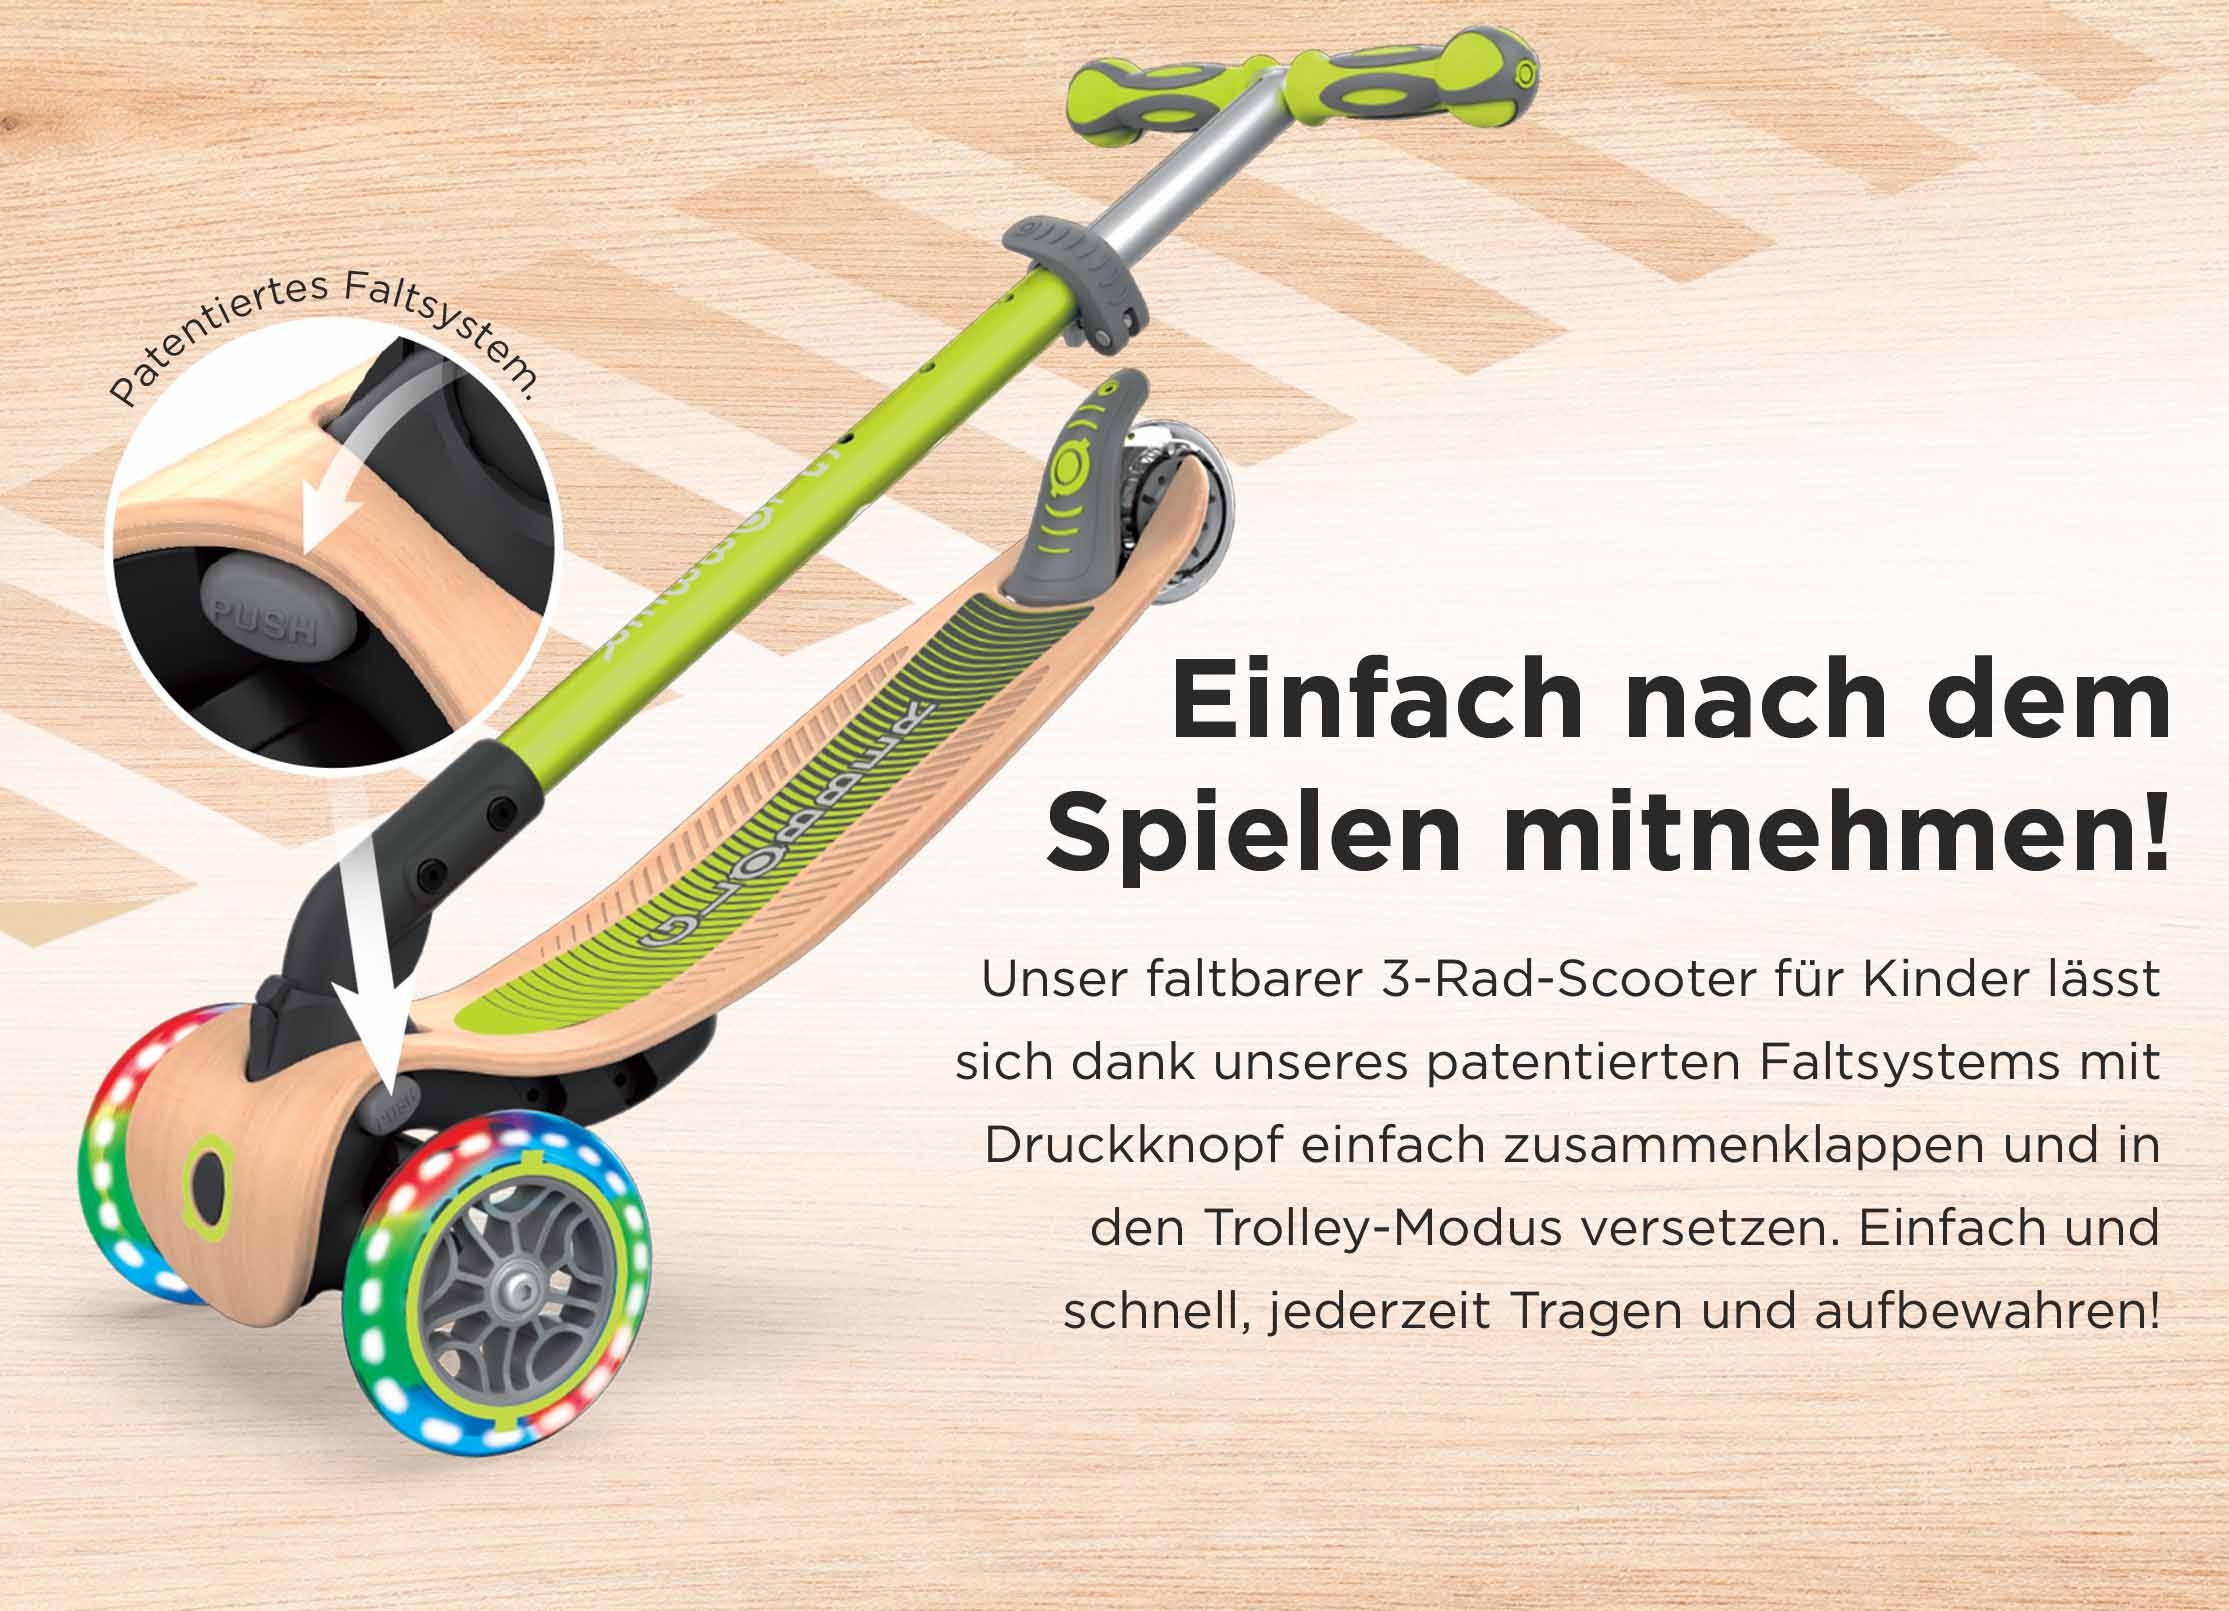 Einfach nach dem Spielen mitnehmen! Unser faltbarer 3-Rad-Scooter für Kinder lässt sich dank unseres patentierten Faltsystems mit Druckknopf einfach zusammenklappen und in den Trolley-Modus versetzen. Einfach und schnell, jederzeit Tragen und aufbewahren!